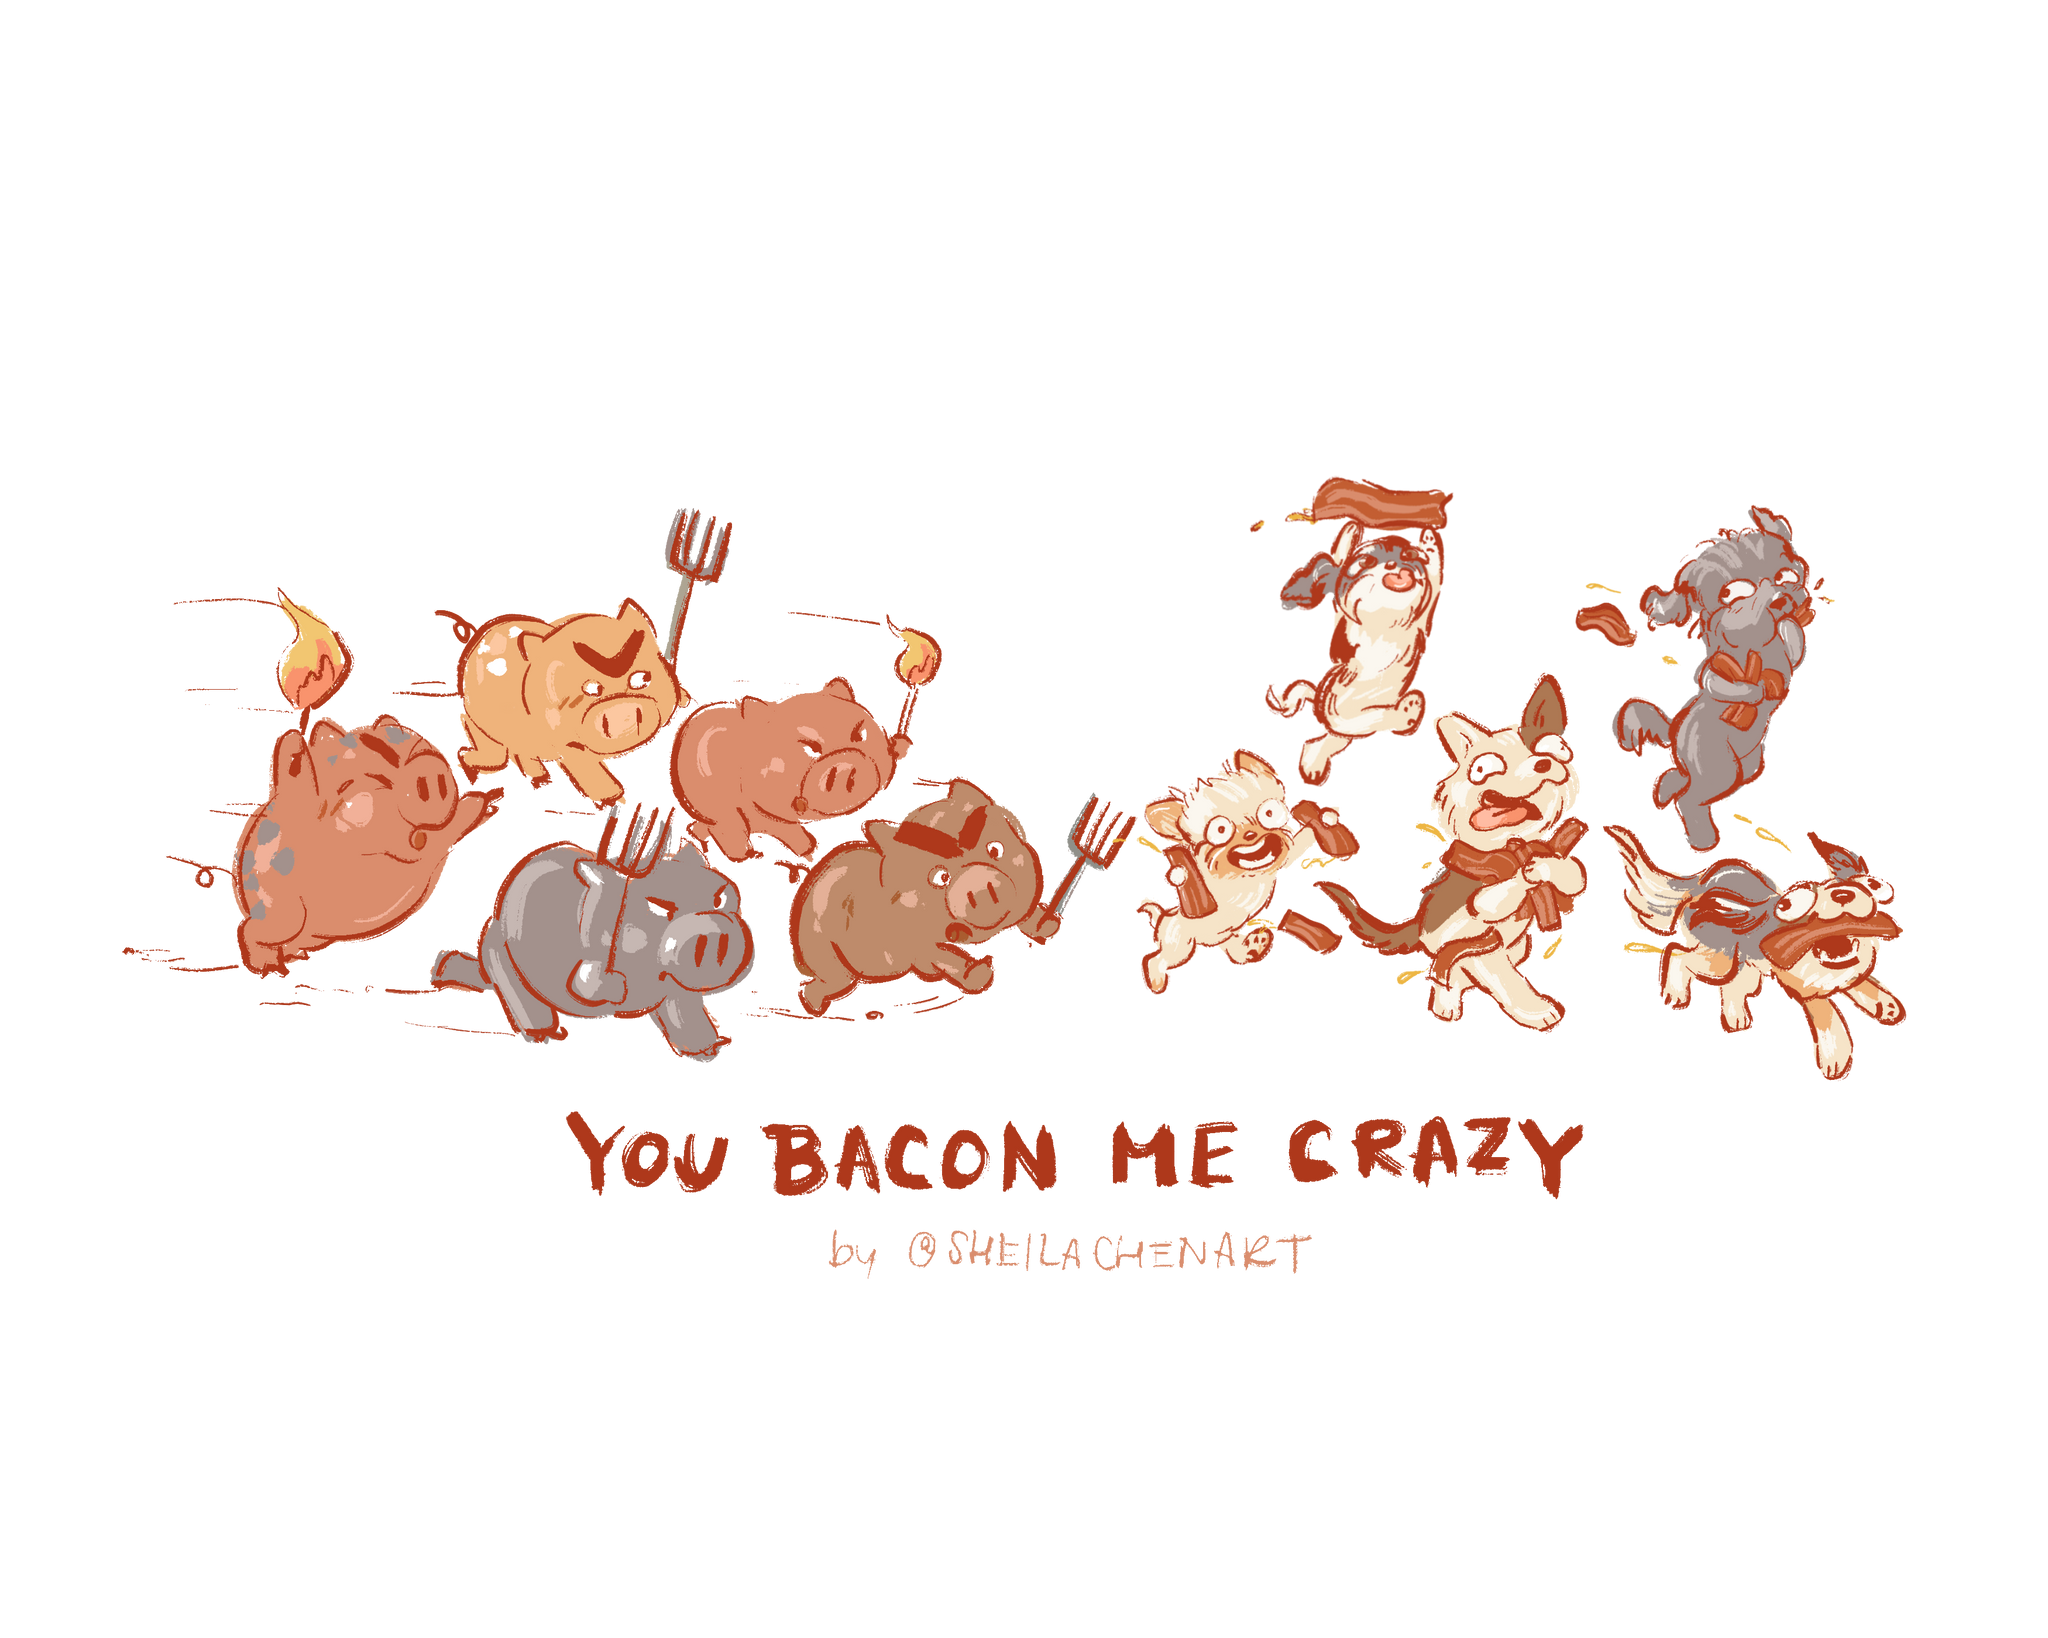 You Bacon Me Crazy